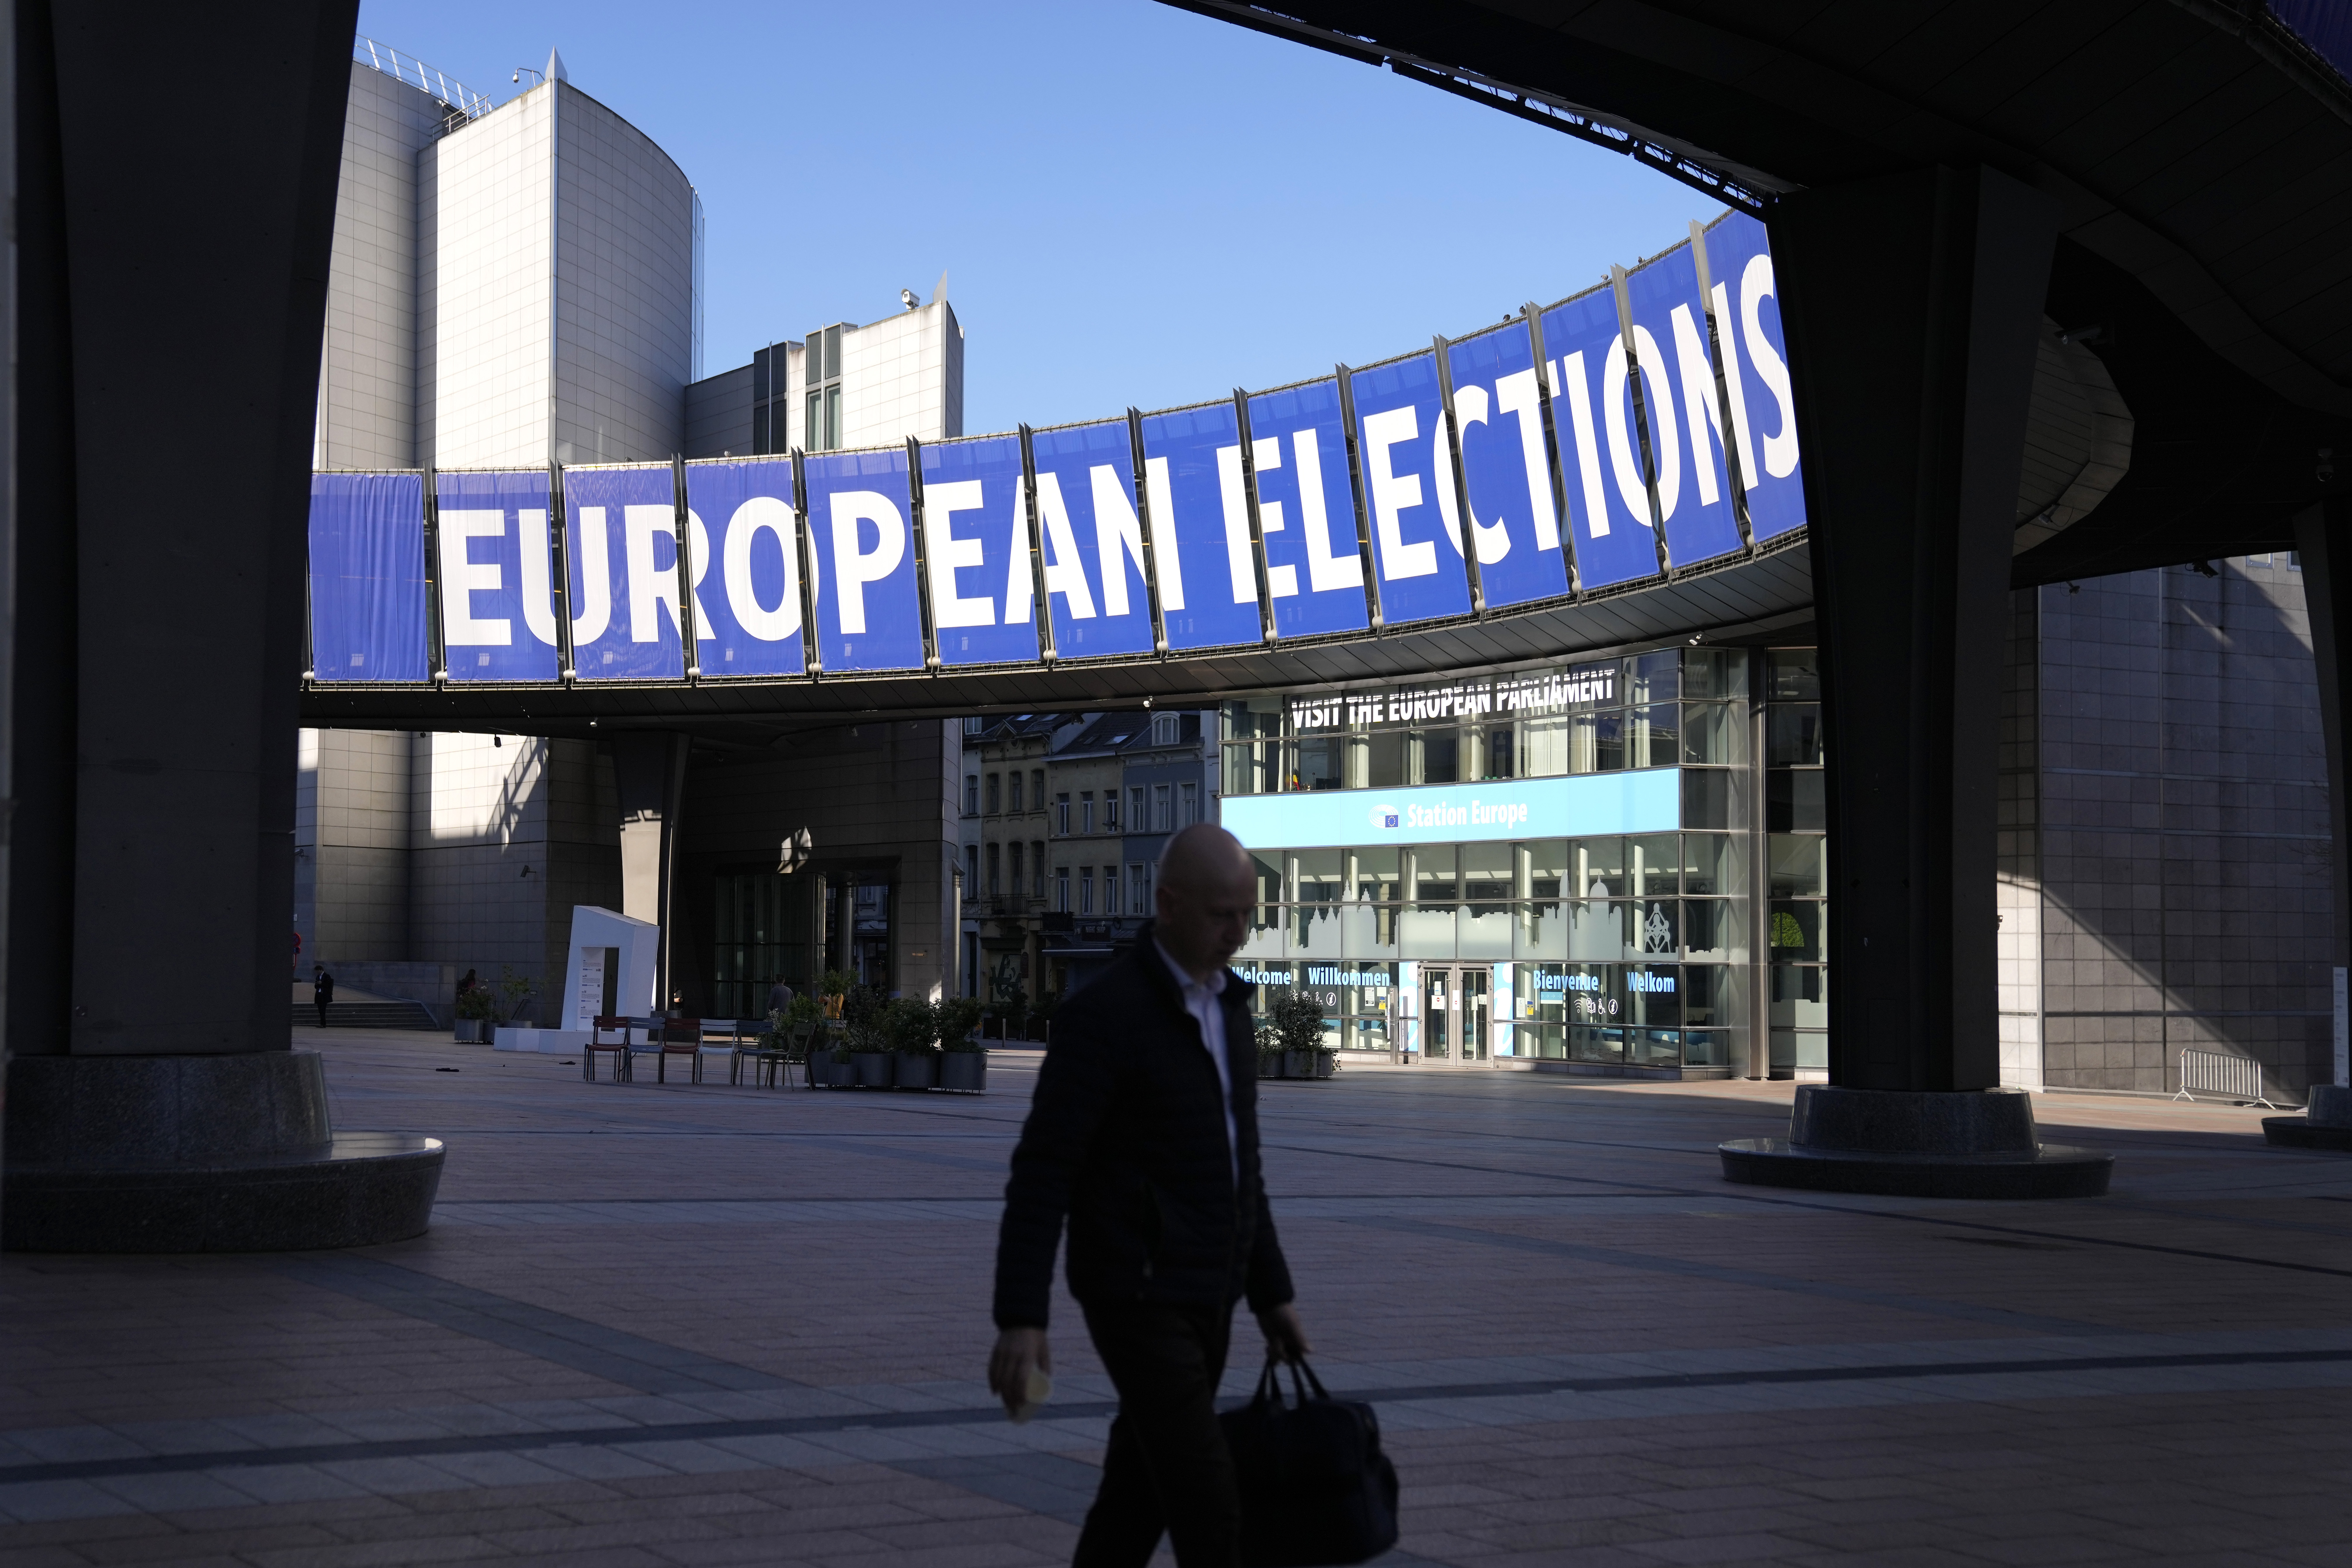 Σ. Ζωντός στο ΕΡΤNews για συμμετοχή στις ευρωεκλογές: Θα είμαστε κοντά στα νούμερα της προηγούμενης κάλπης – Θα καταγραφεί μια άνοδος στην ακροδεξιά